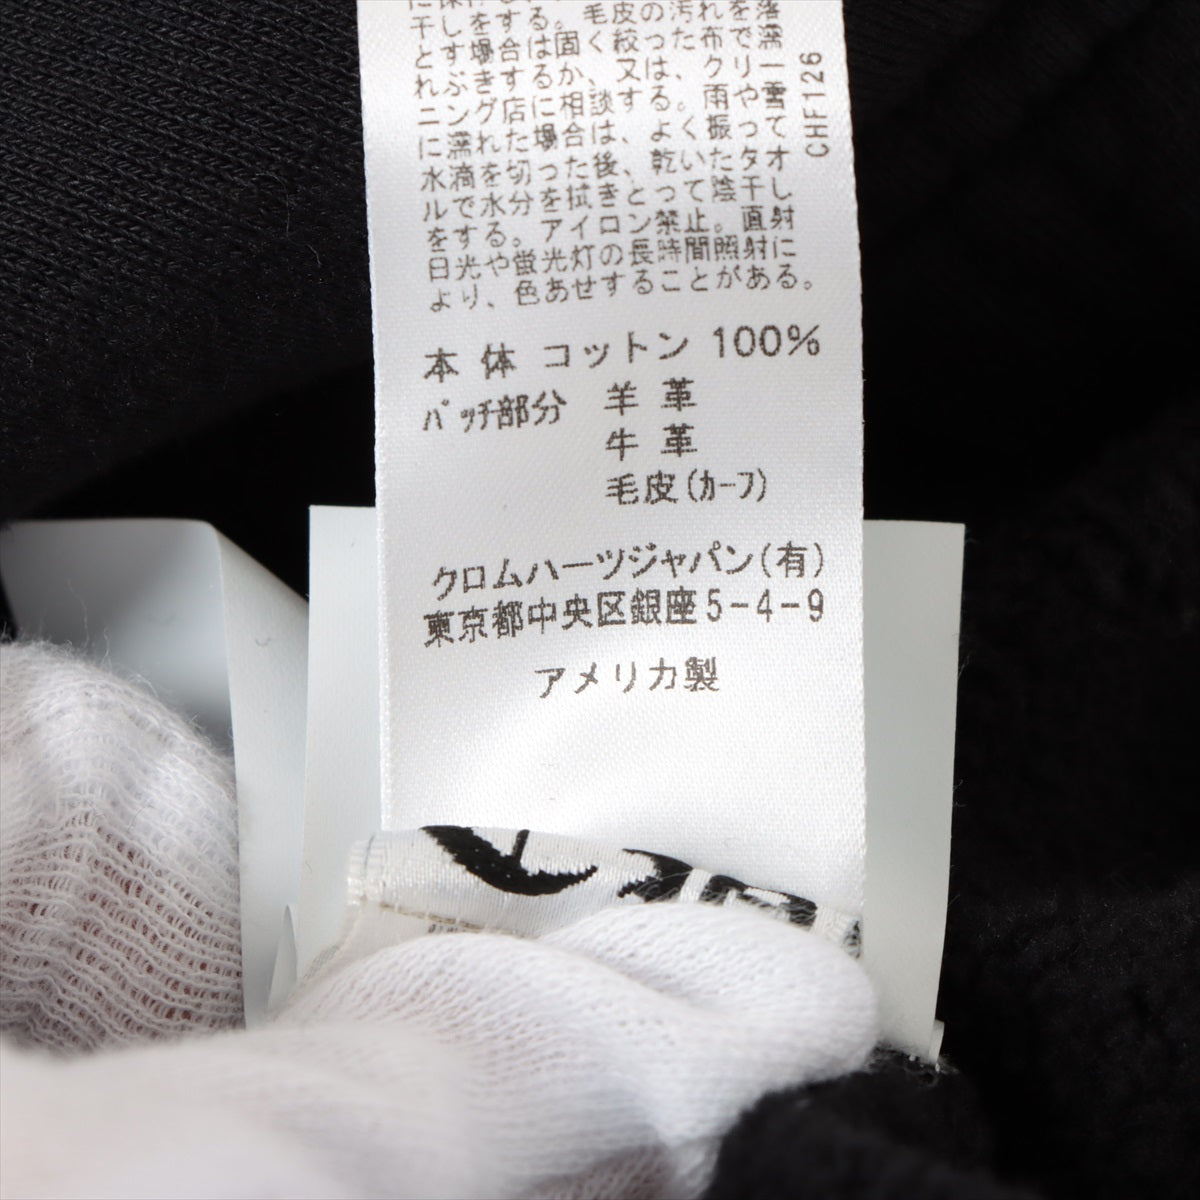 【稀少 新品】クロムハーツ YNOT ダガー ジップ スウェット パンツ 黒